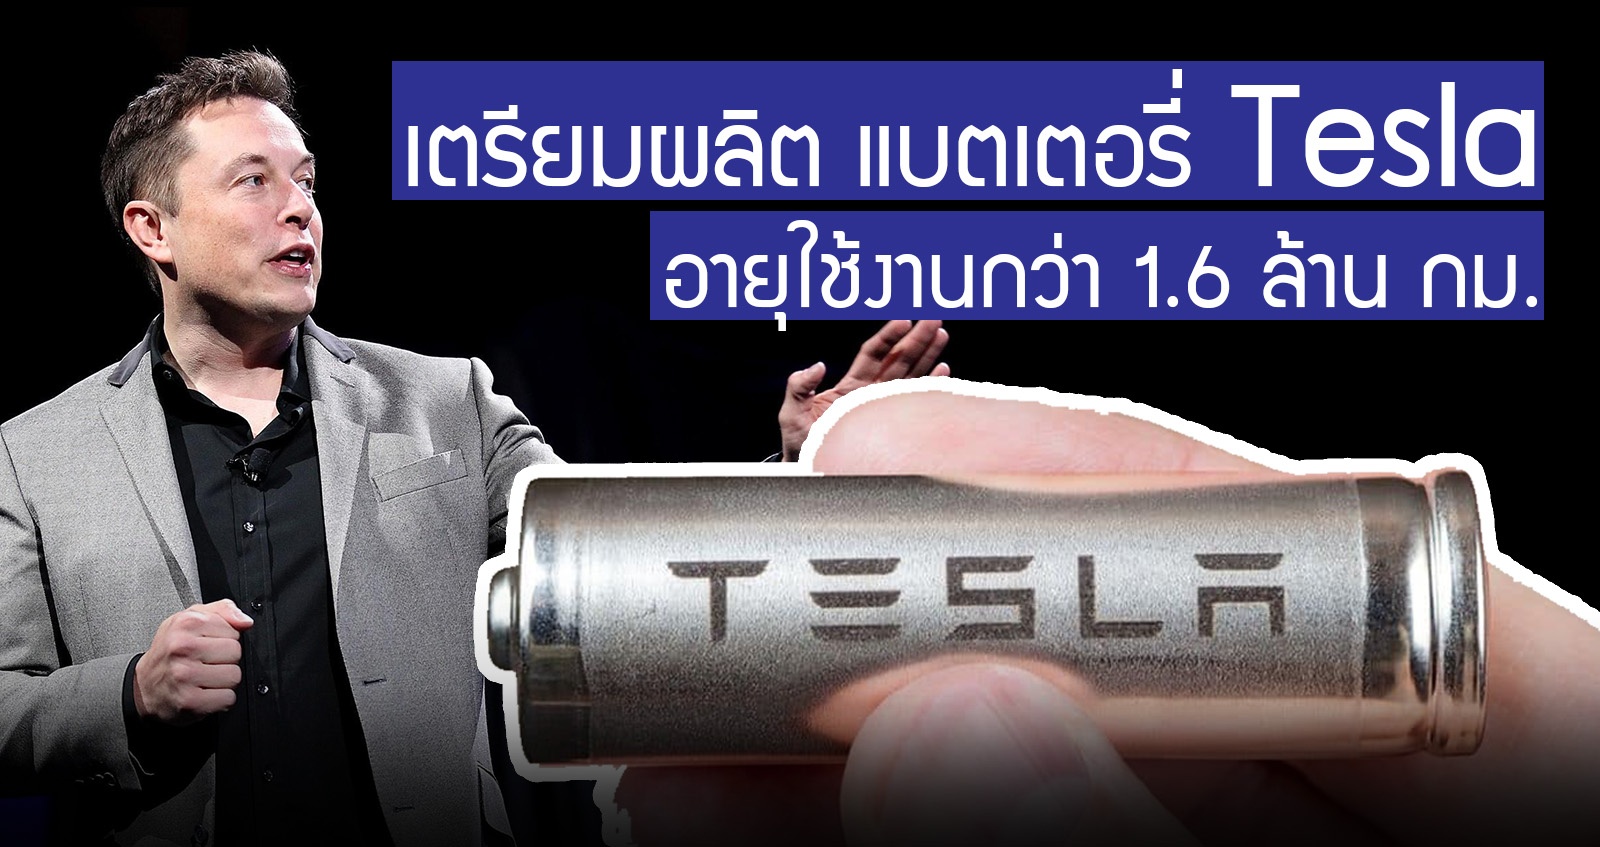 Tesla เตรียมผลิตแบตเตอรี่ อายุใช้งานกว่า 1.6 ล้านกิโลเมตร